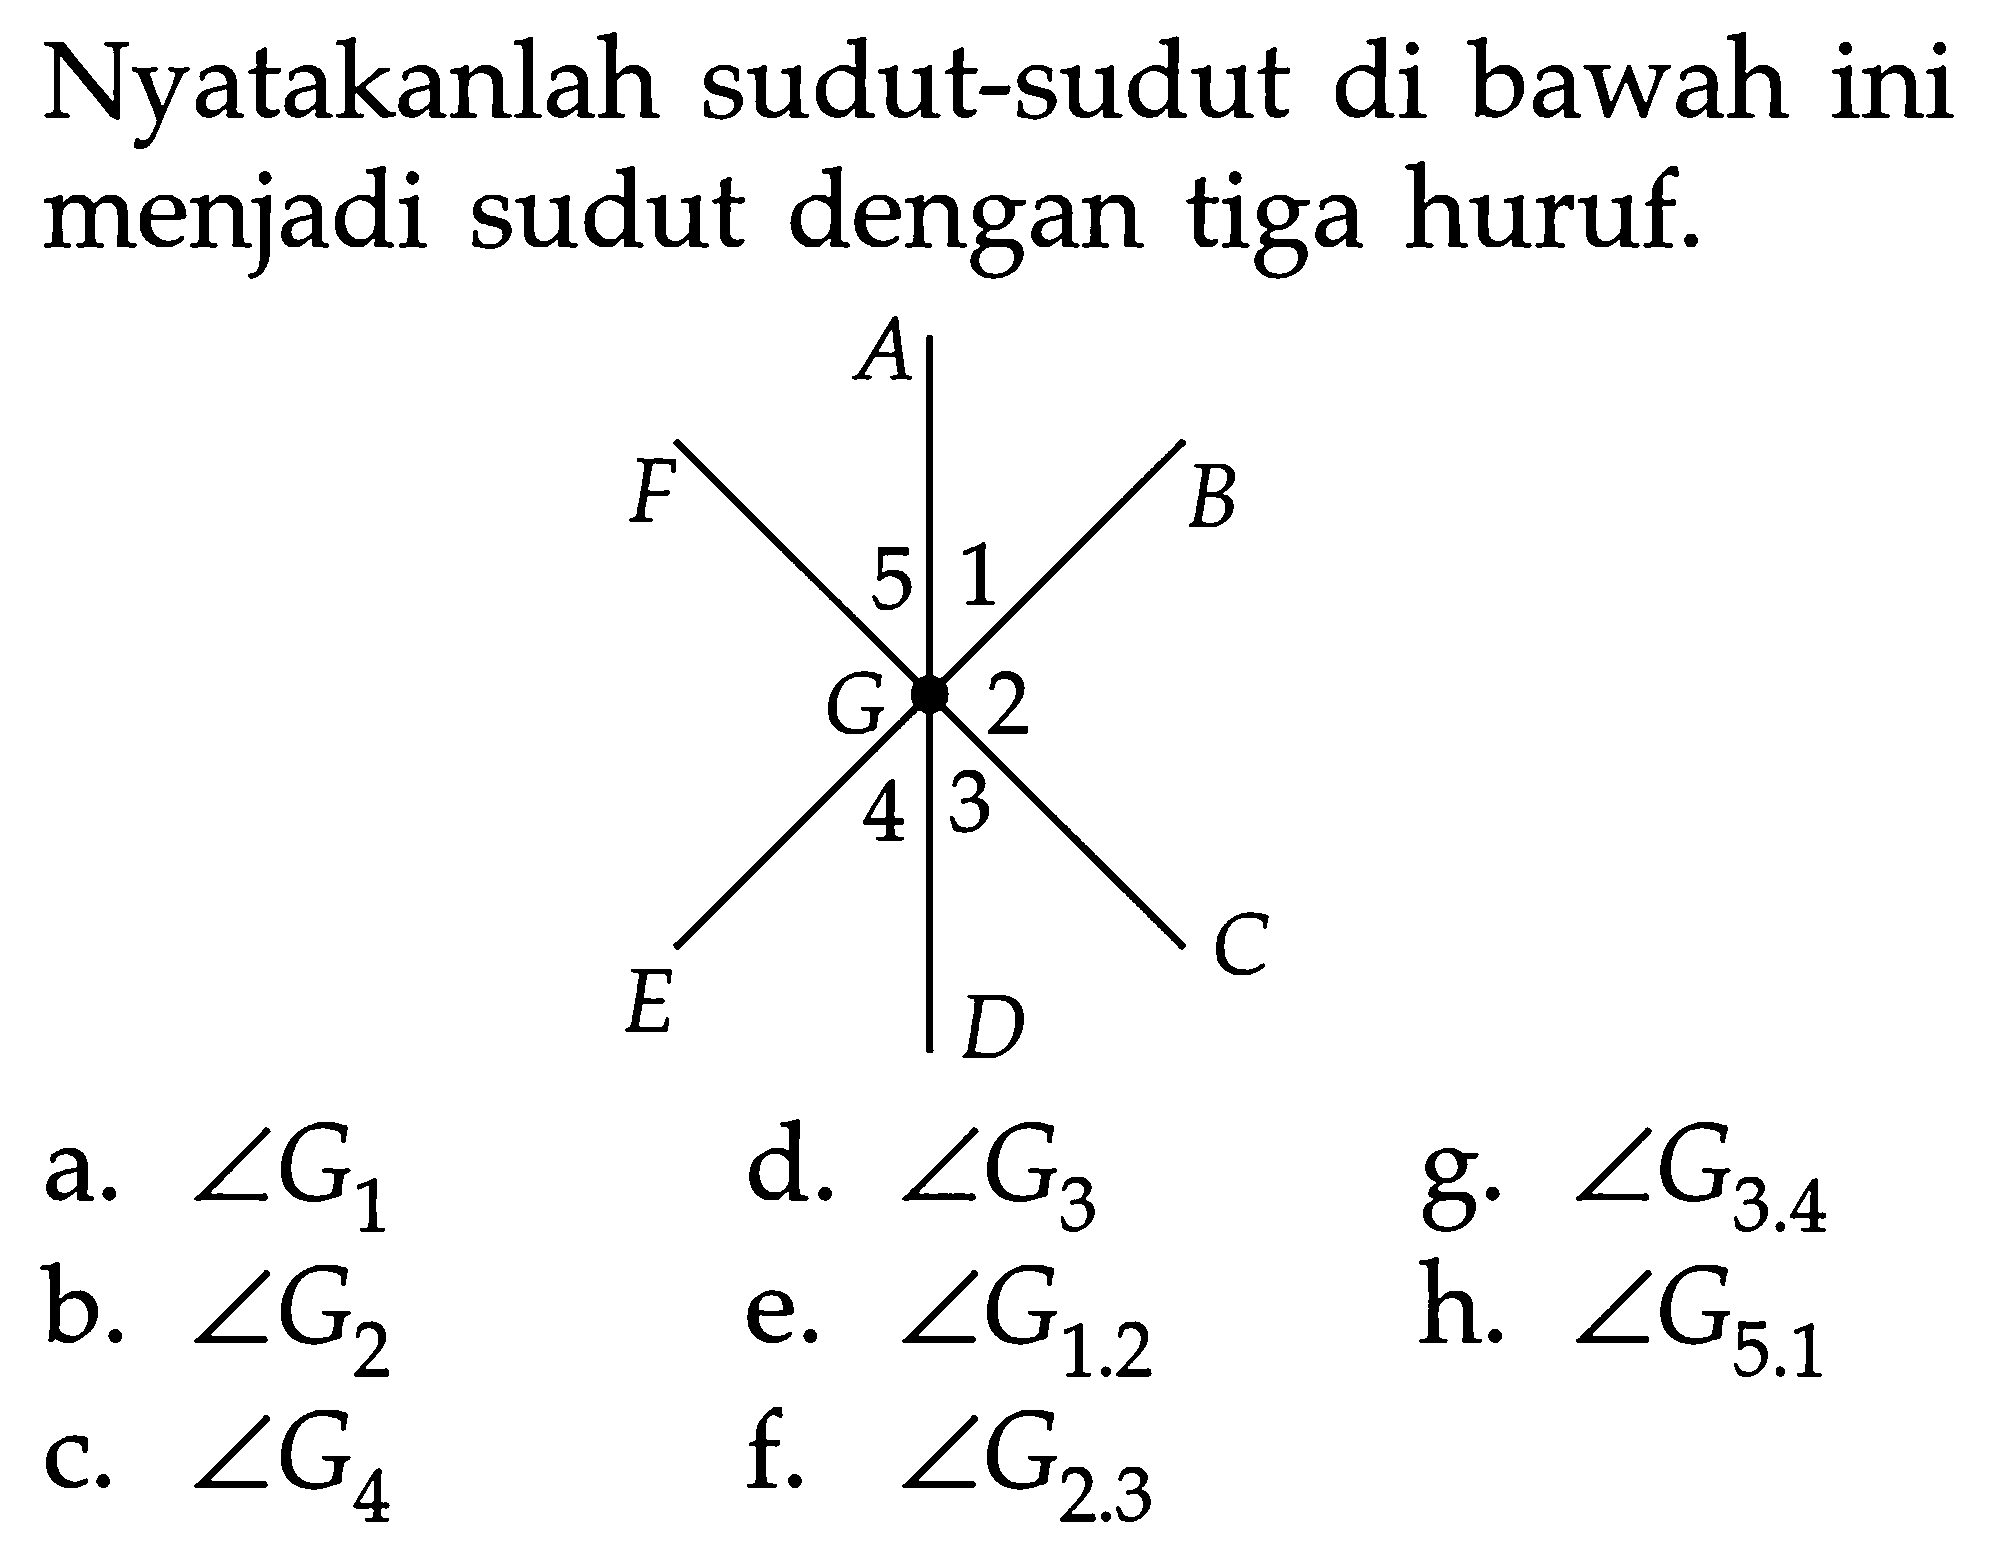 Nyatakanlah sudut-sudut di bawah ini menjadi sudut dengan tiga huruf. A F B 5 1 G 2 4 3 C E Da.  sudut G1 d.  sudut G3 g.  sudut G3.4 b.  sudut G2 e.  sudut G1.2 h.  sudut G5.1 c.  sudut G4 f.  sudut G2.3 